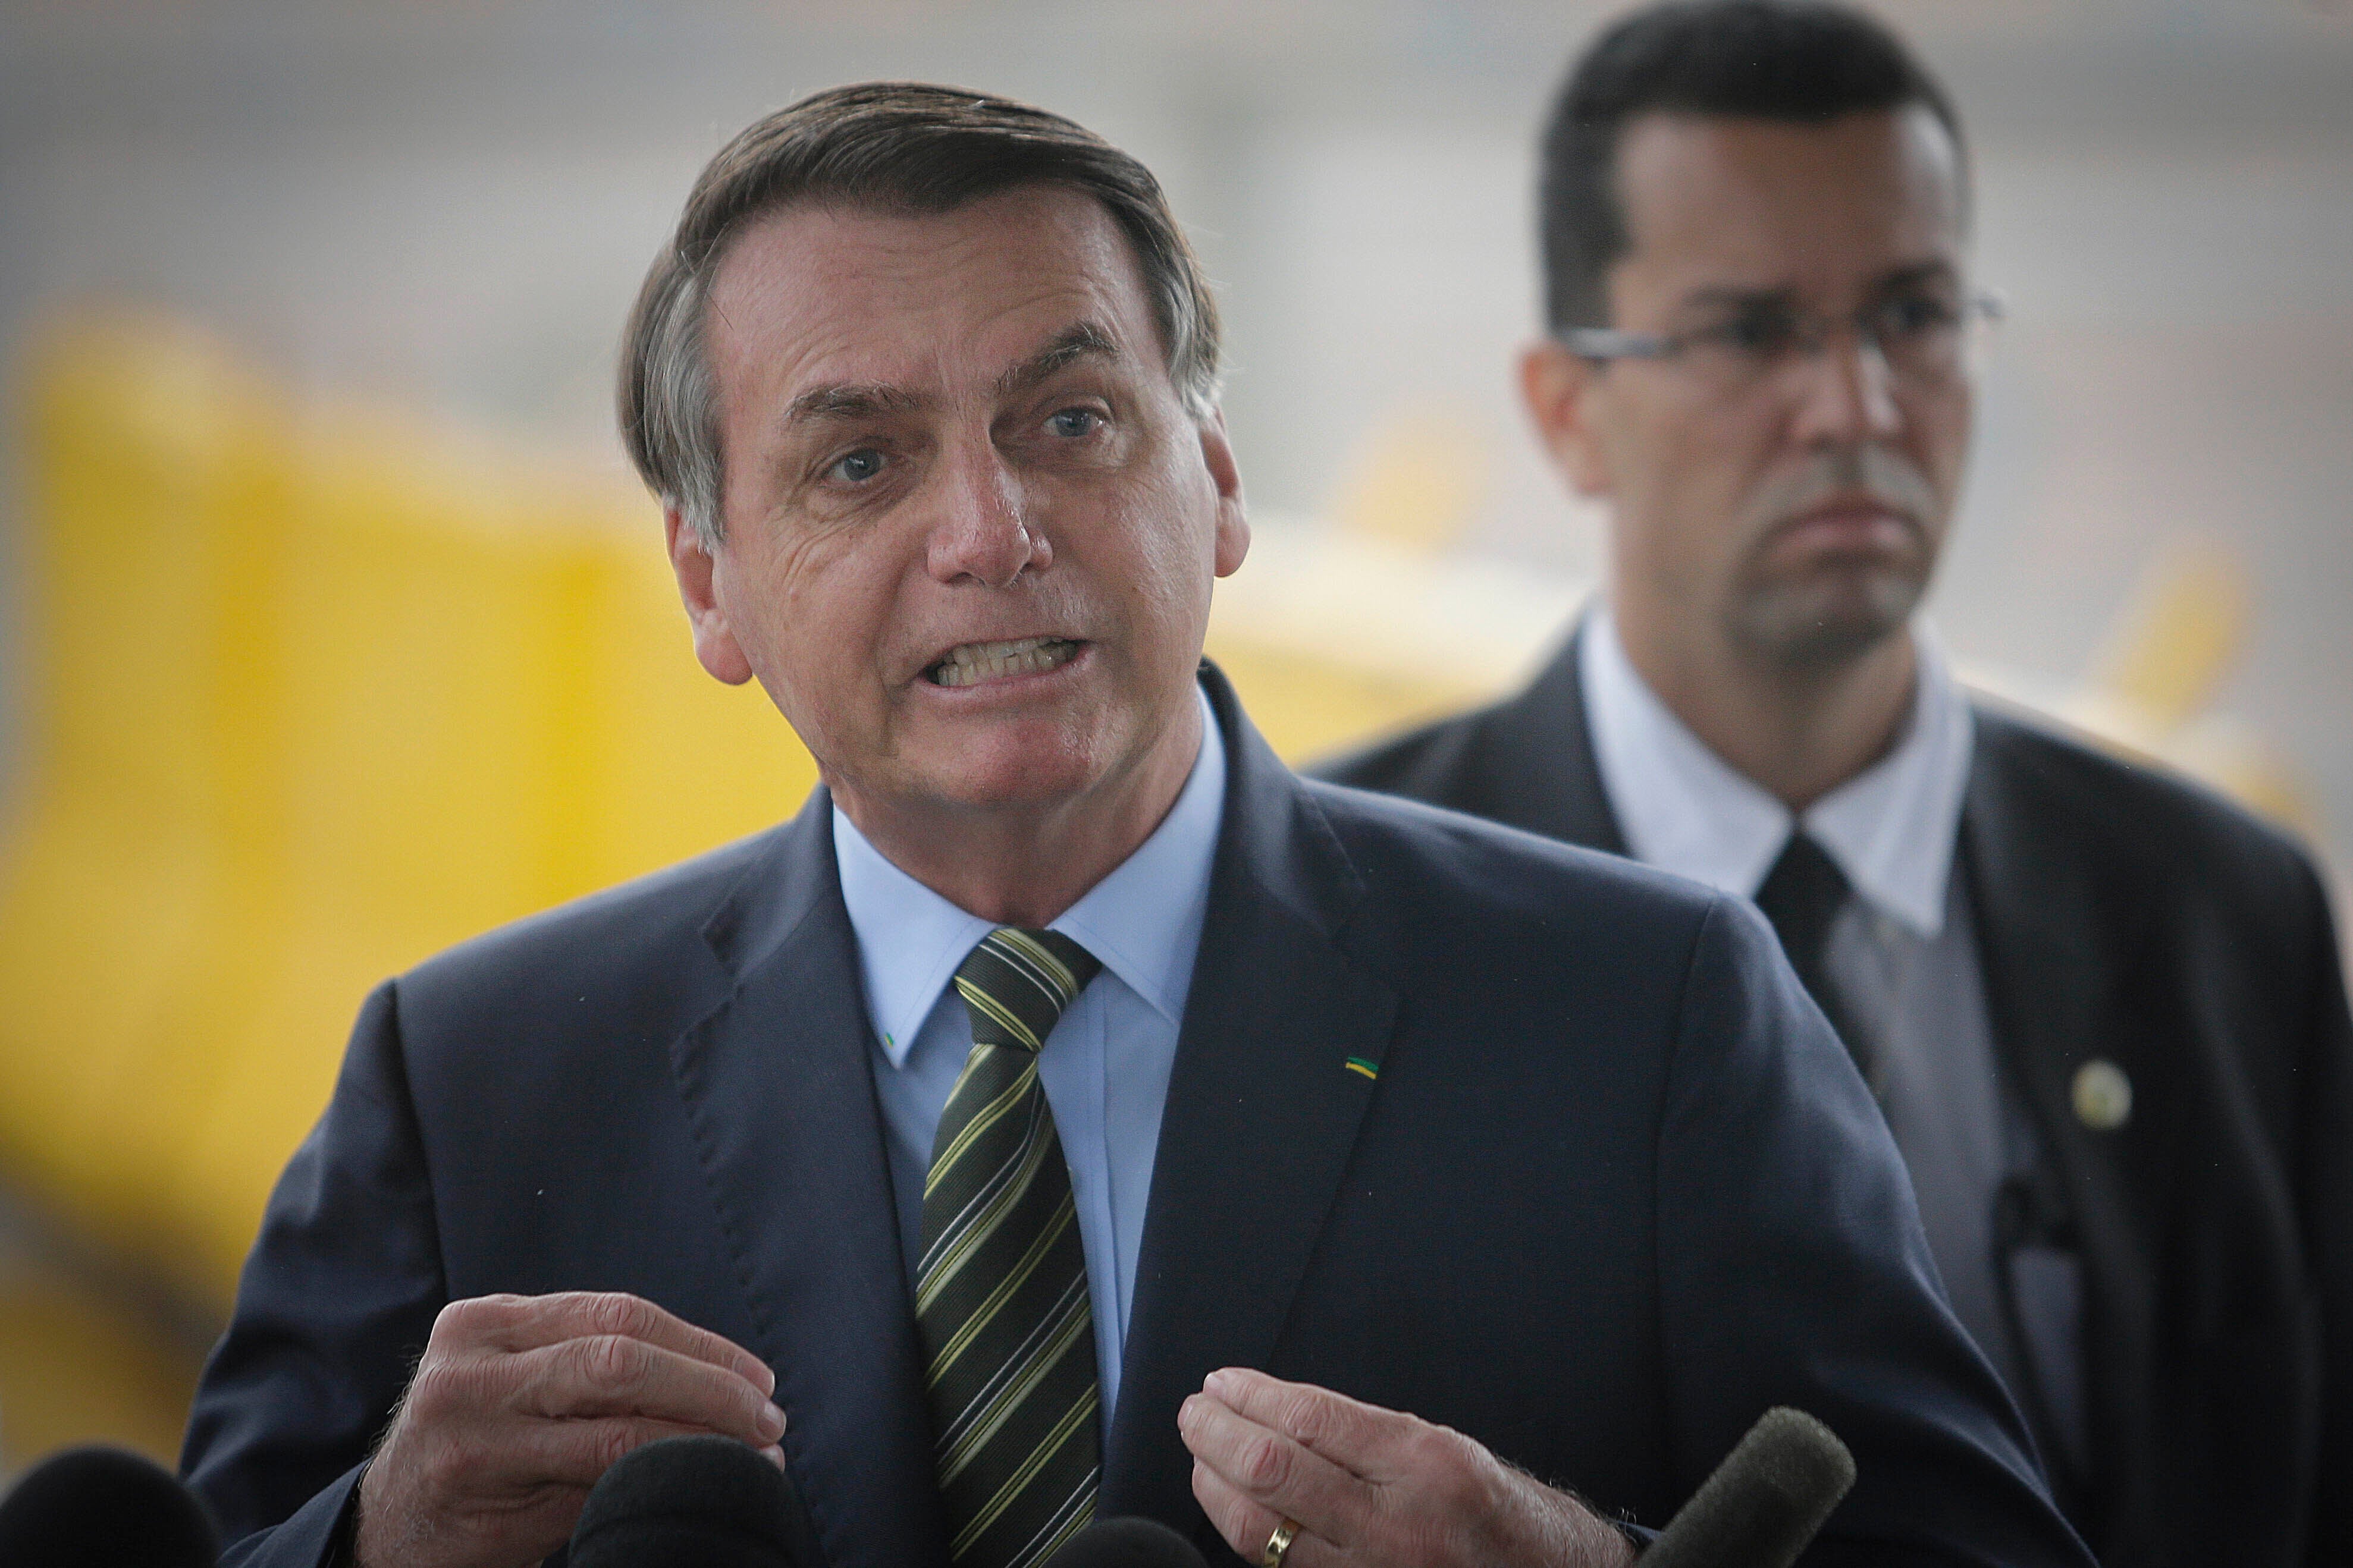 Attempt to Greenwash Bolsonaro’s Environmental Record Backfires at OECD